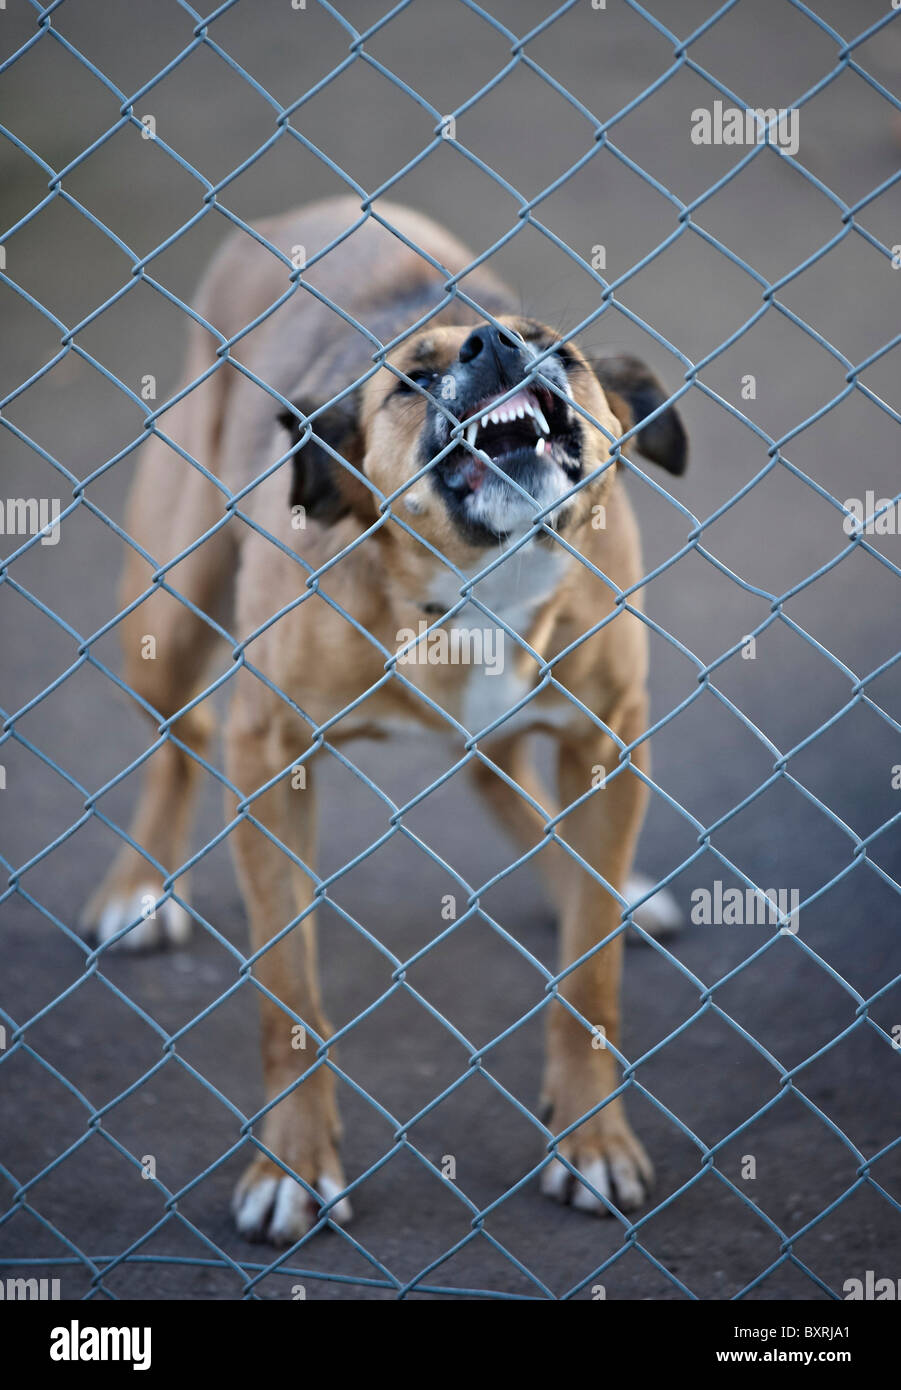 angry dog Stock Photo